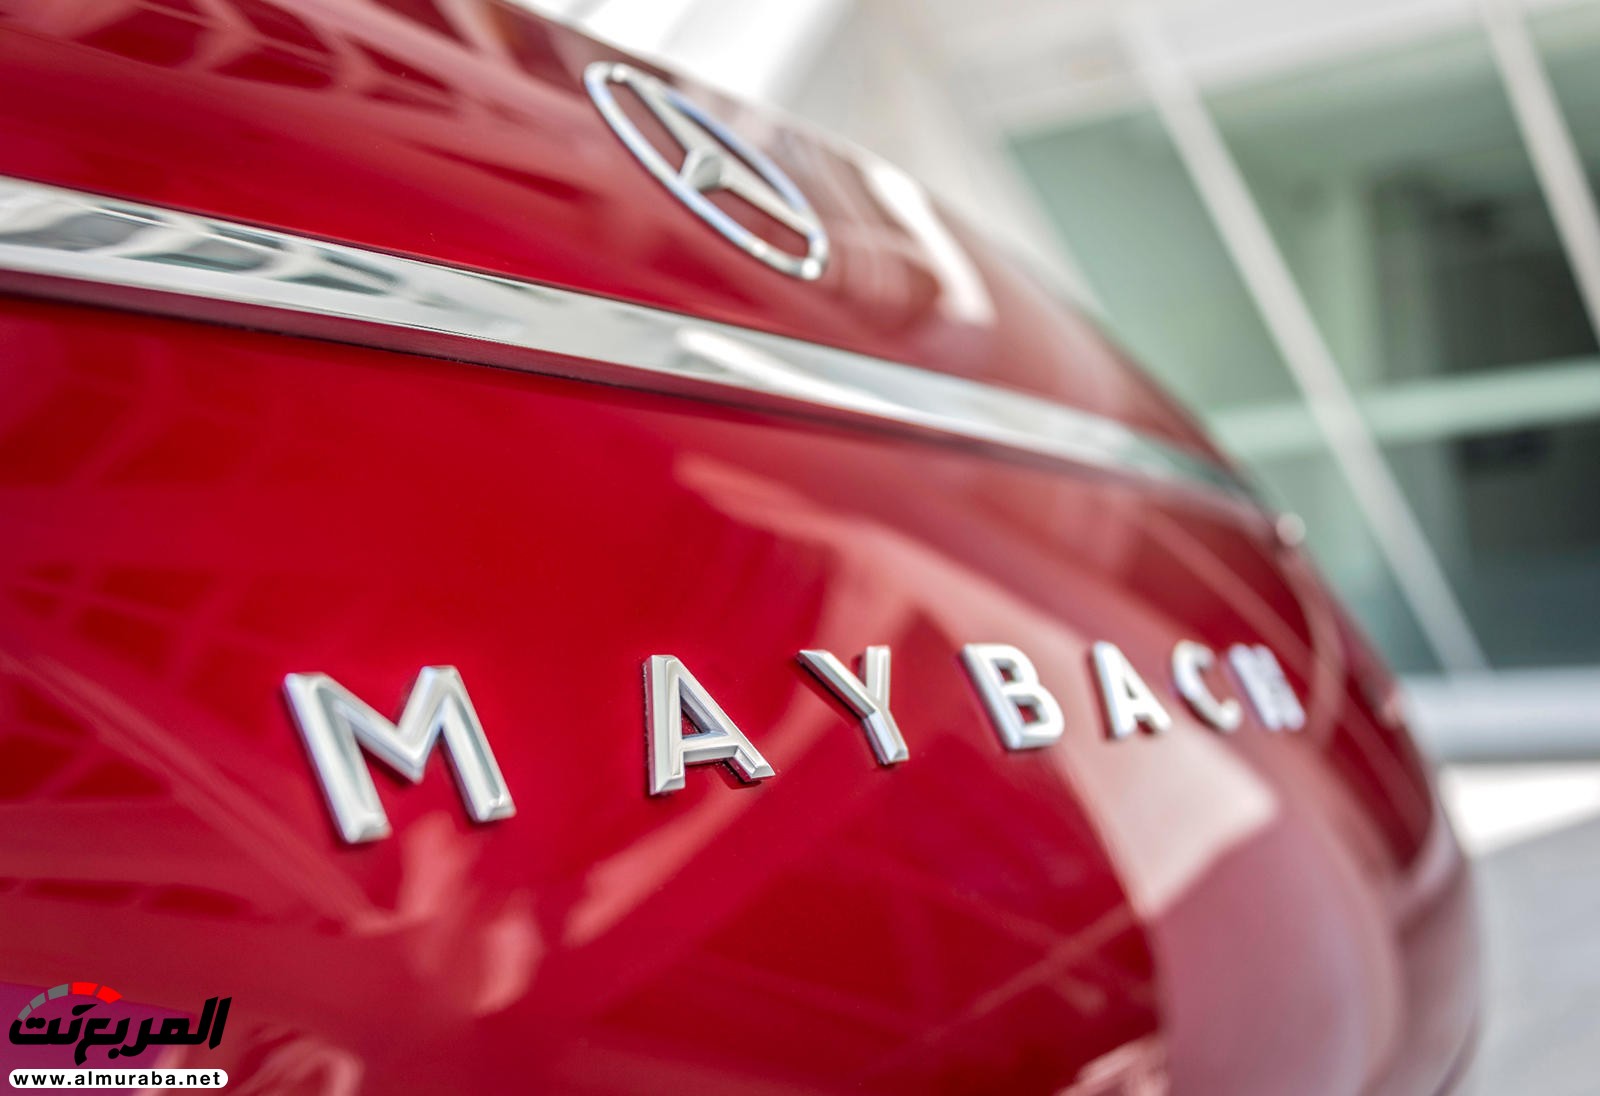 "بالصور" نظرة على مرسيدس مايباخ SUV الاختبارية وفخامتها الداخلية والخارجية 66